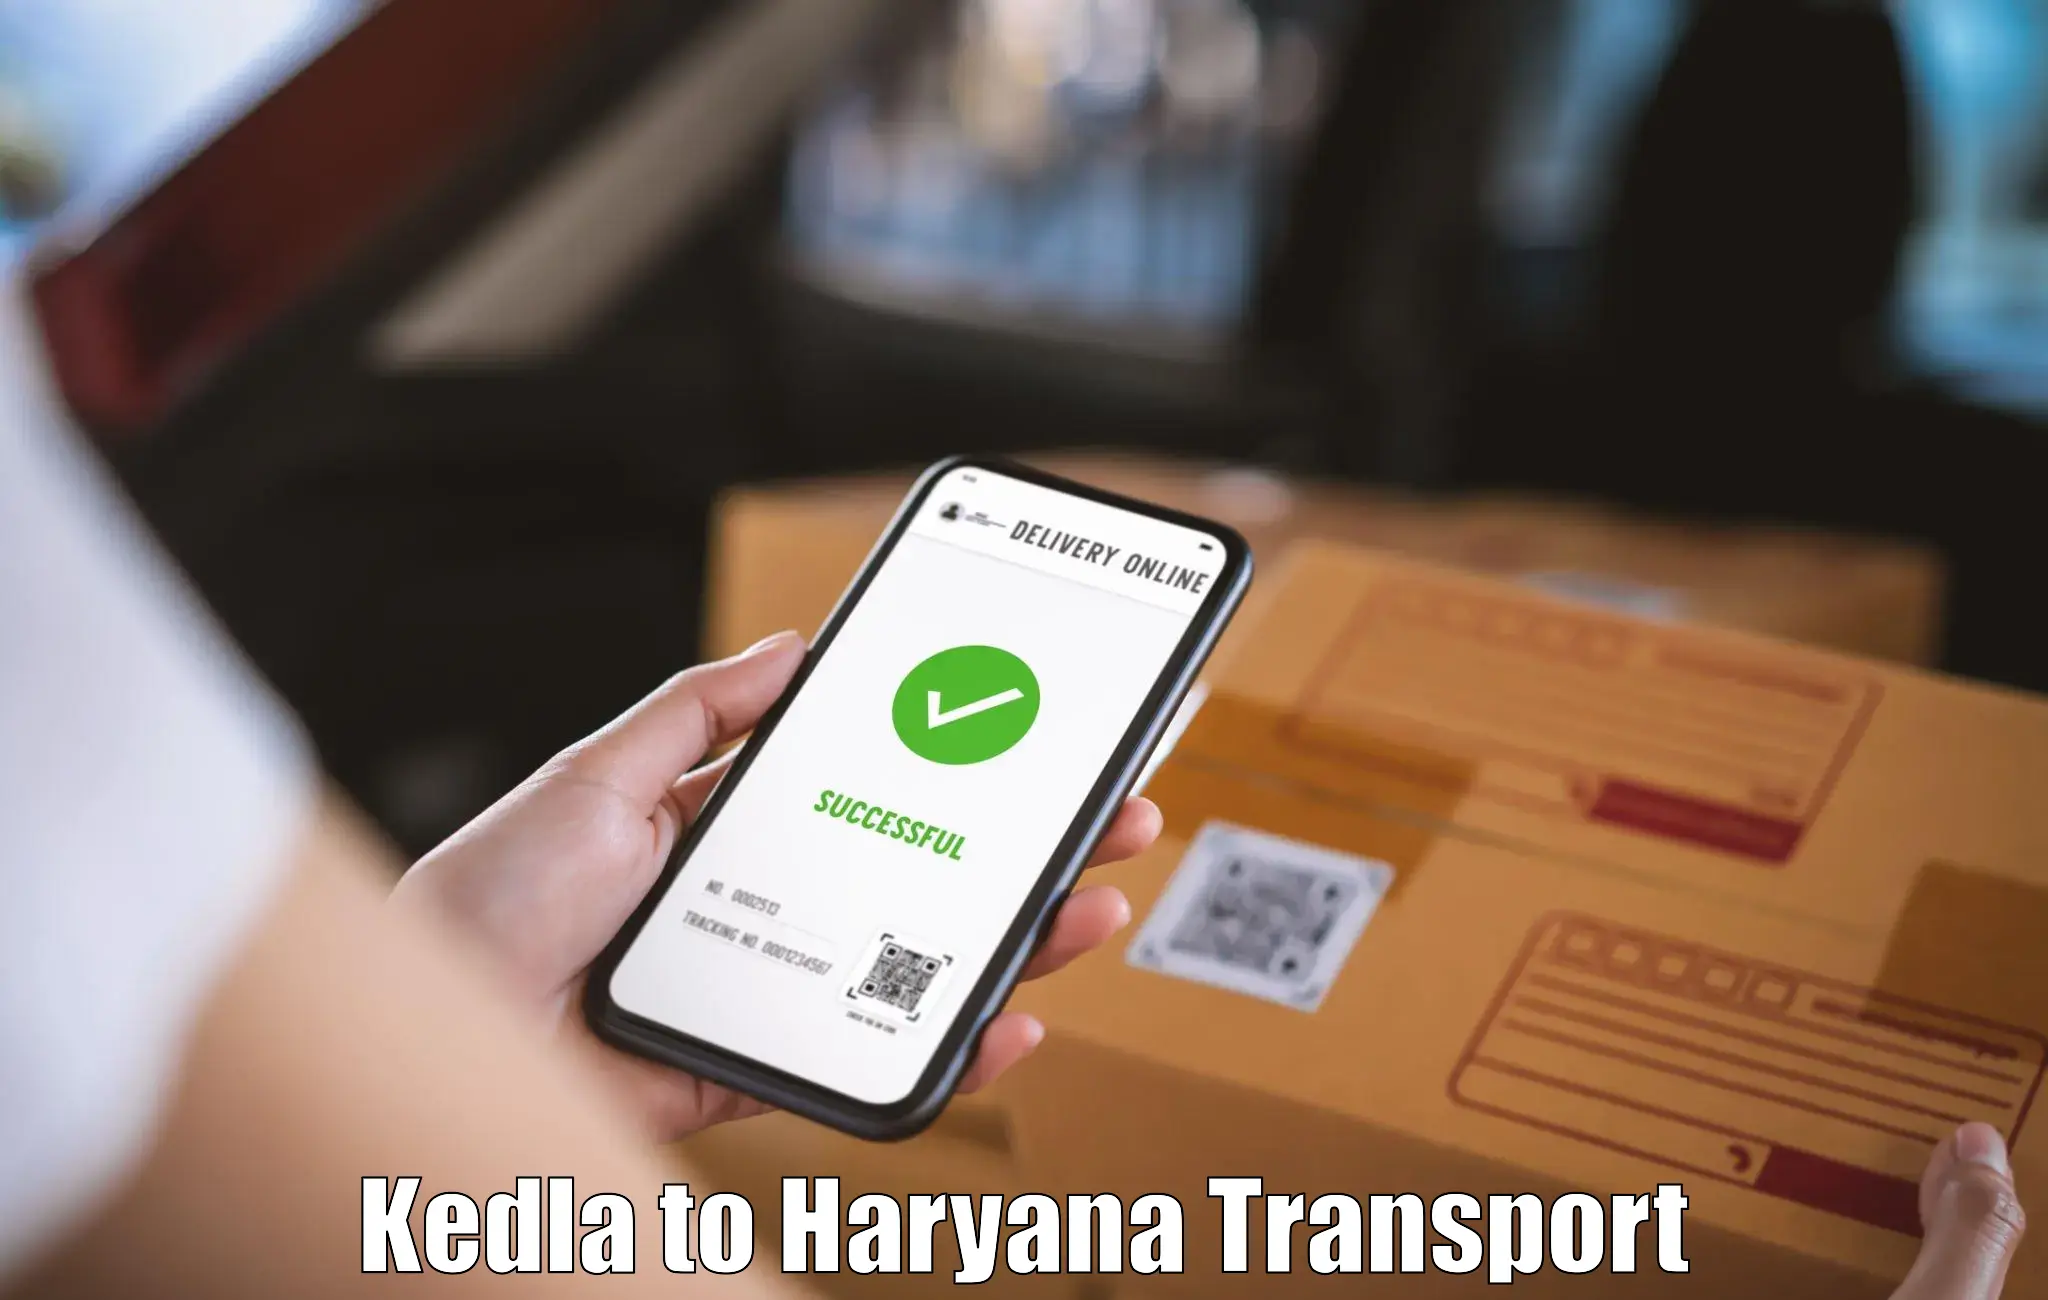 Cycle transportation service Kedla to Haryana